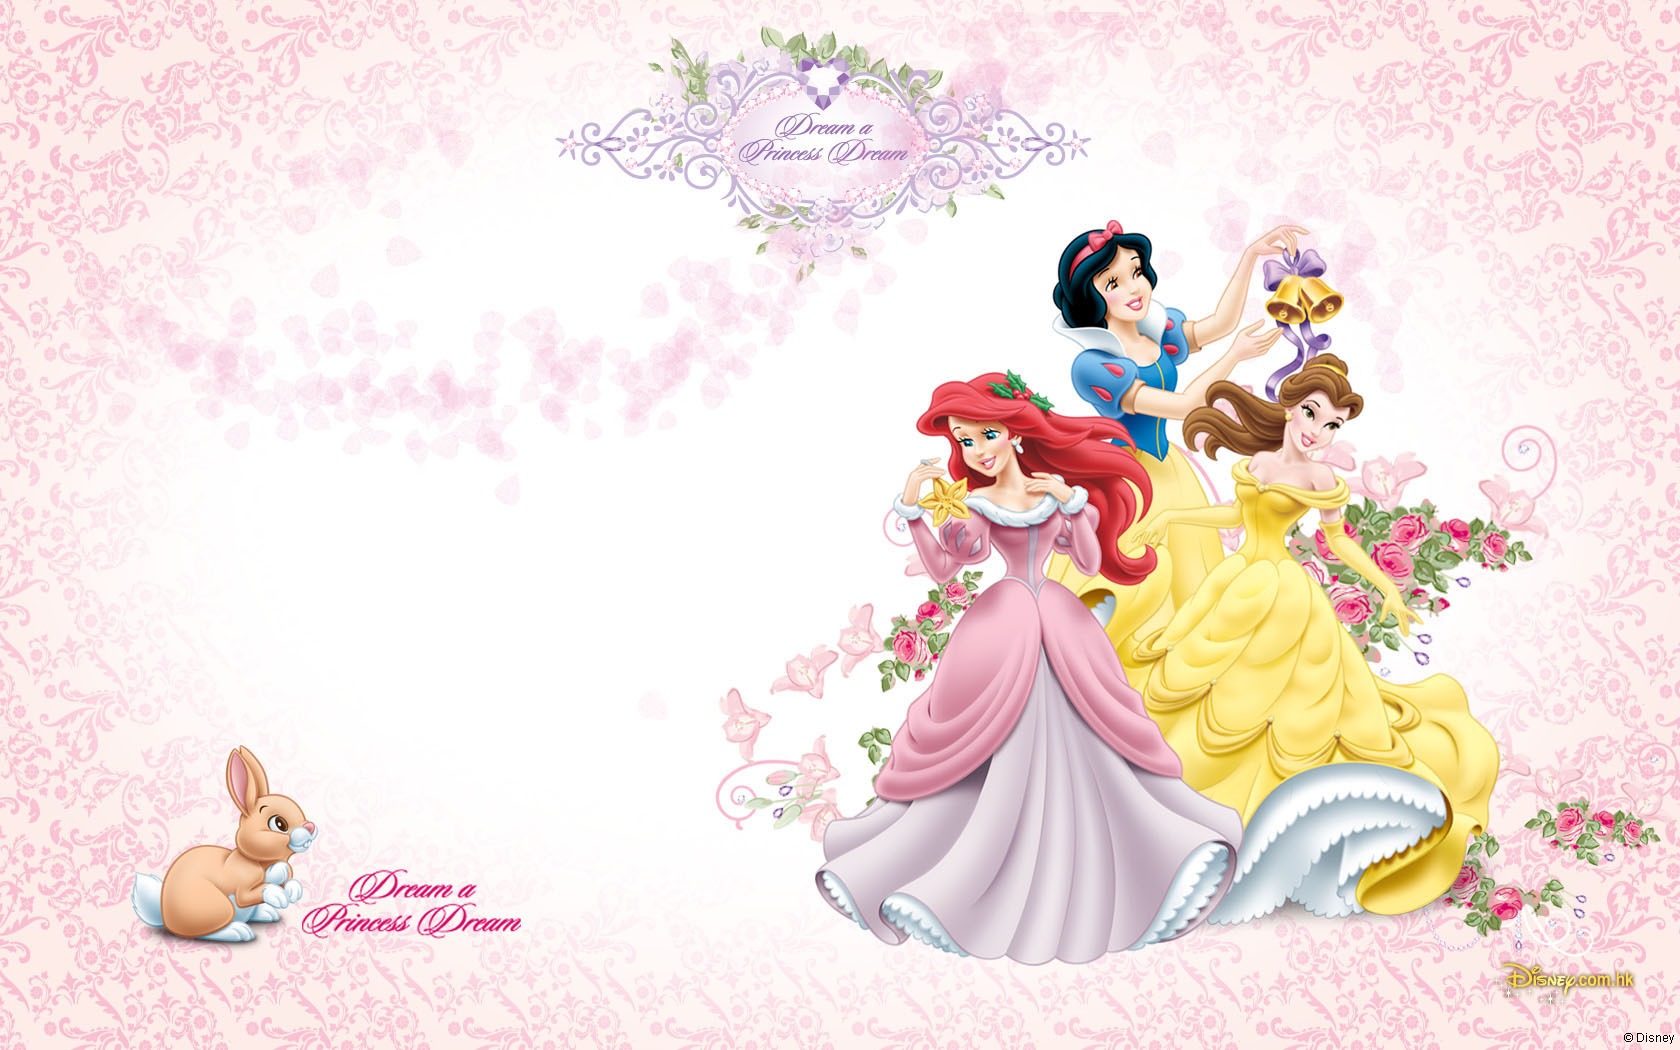 Disney Princess images Disney Princess wallpaper photos